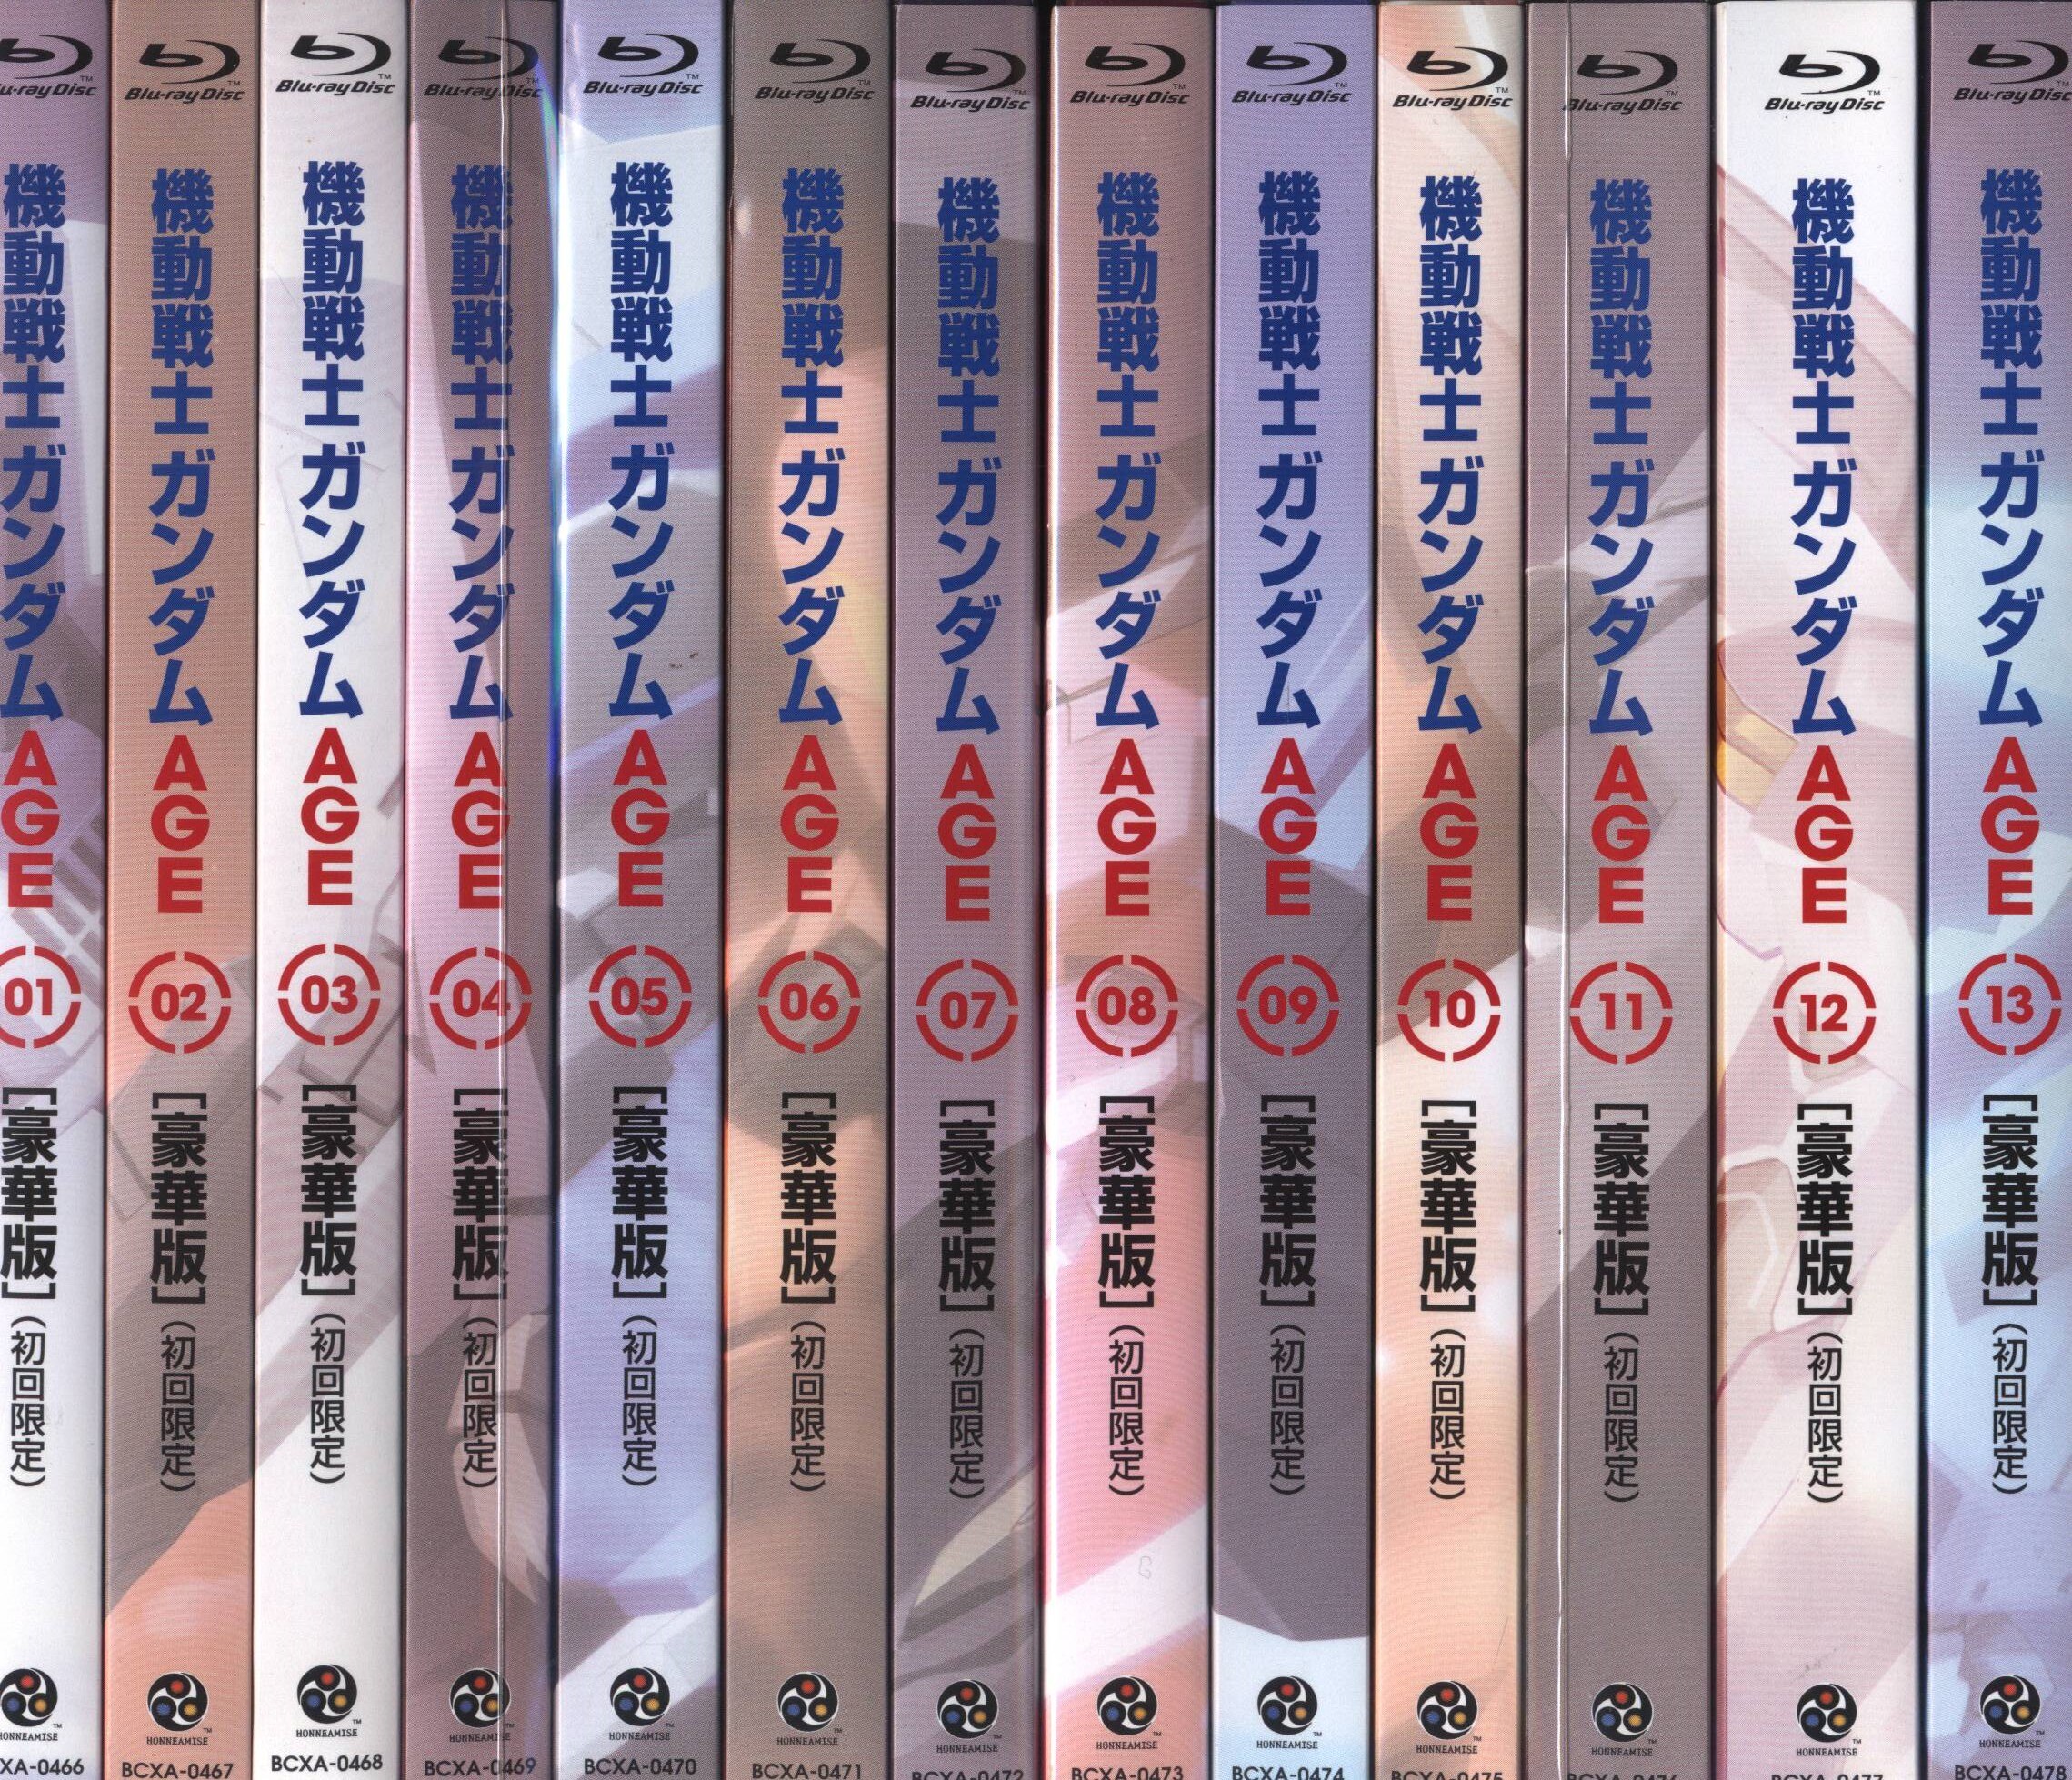 アニメBlu-ray 初回限定 豪華版 機動戦士ガンダムAGE 全13巻セット